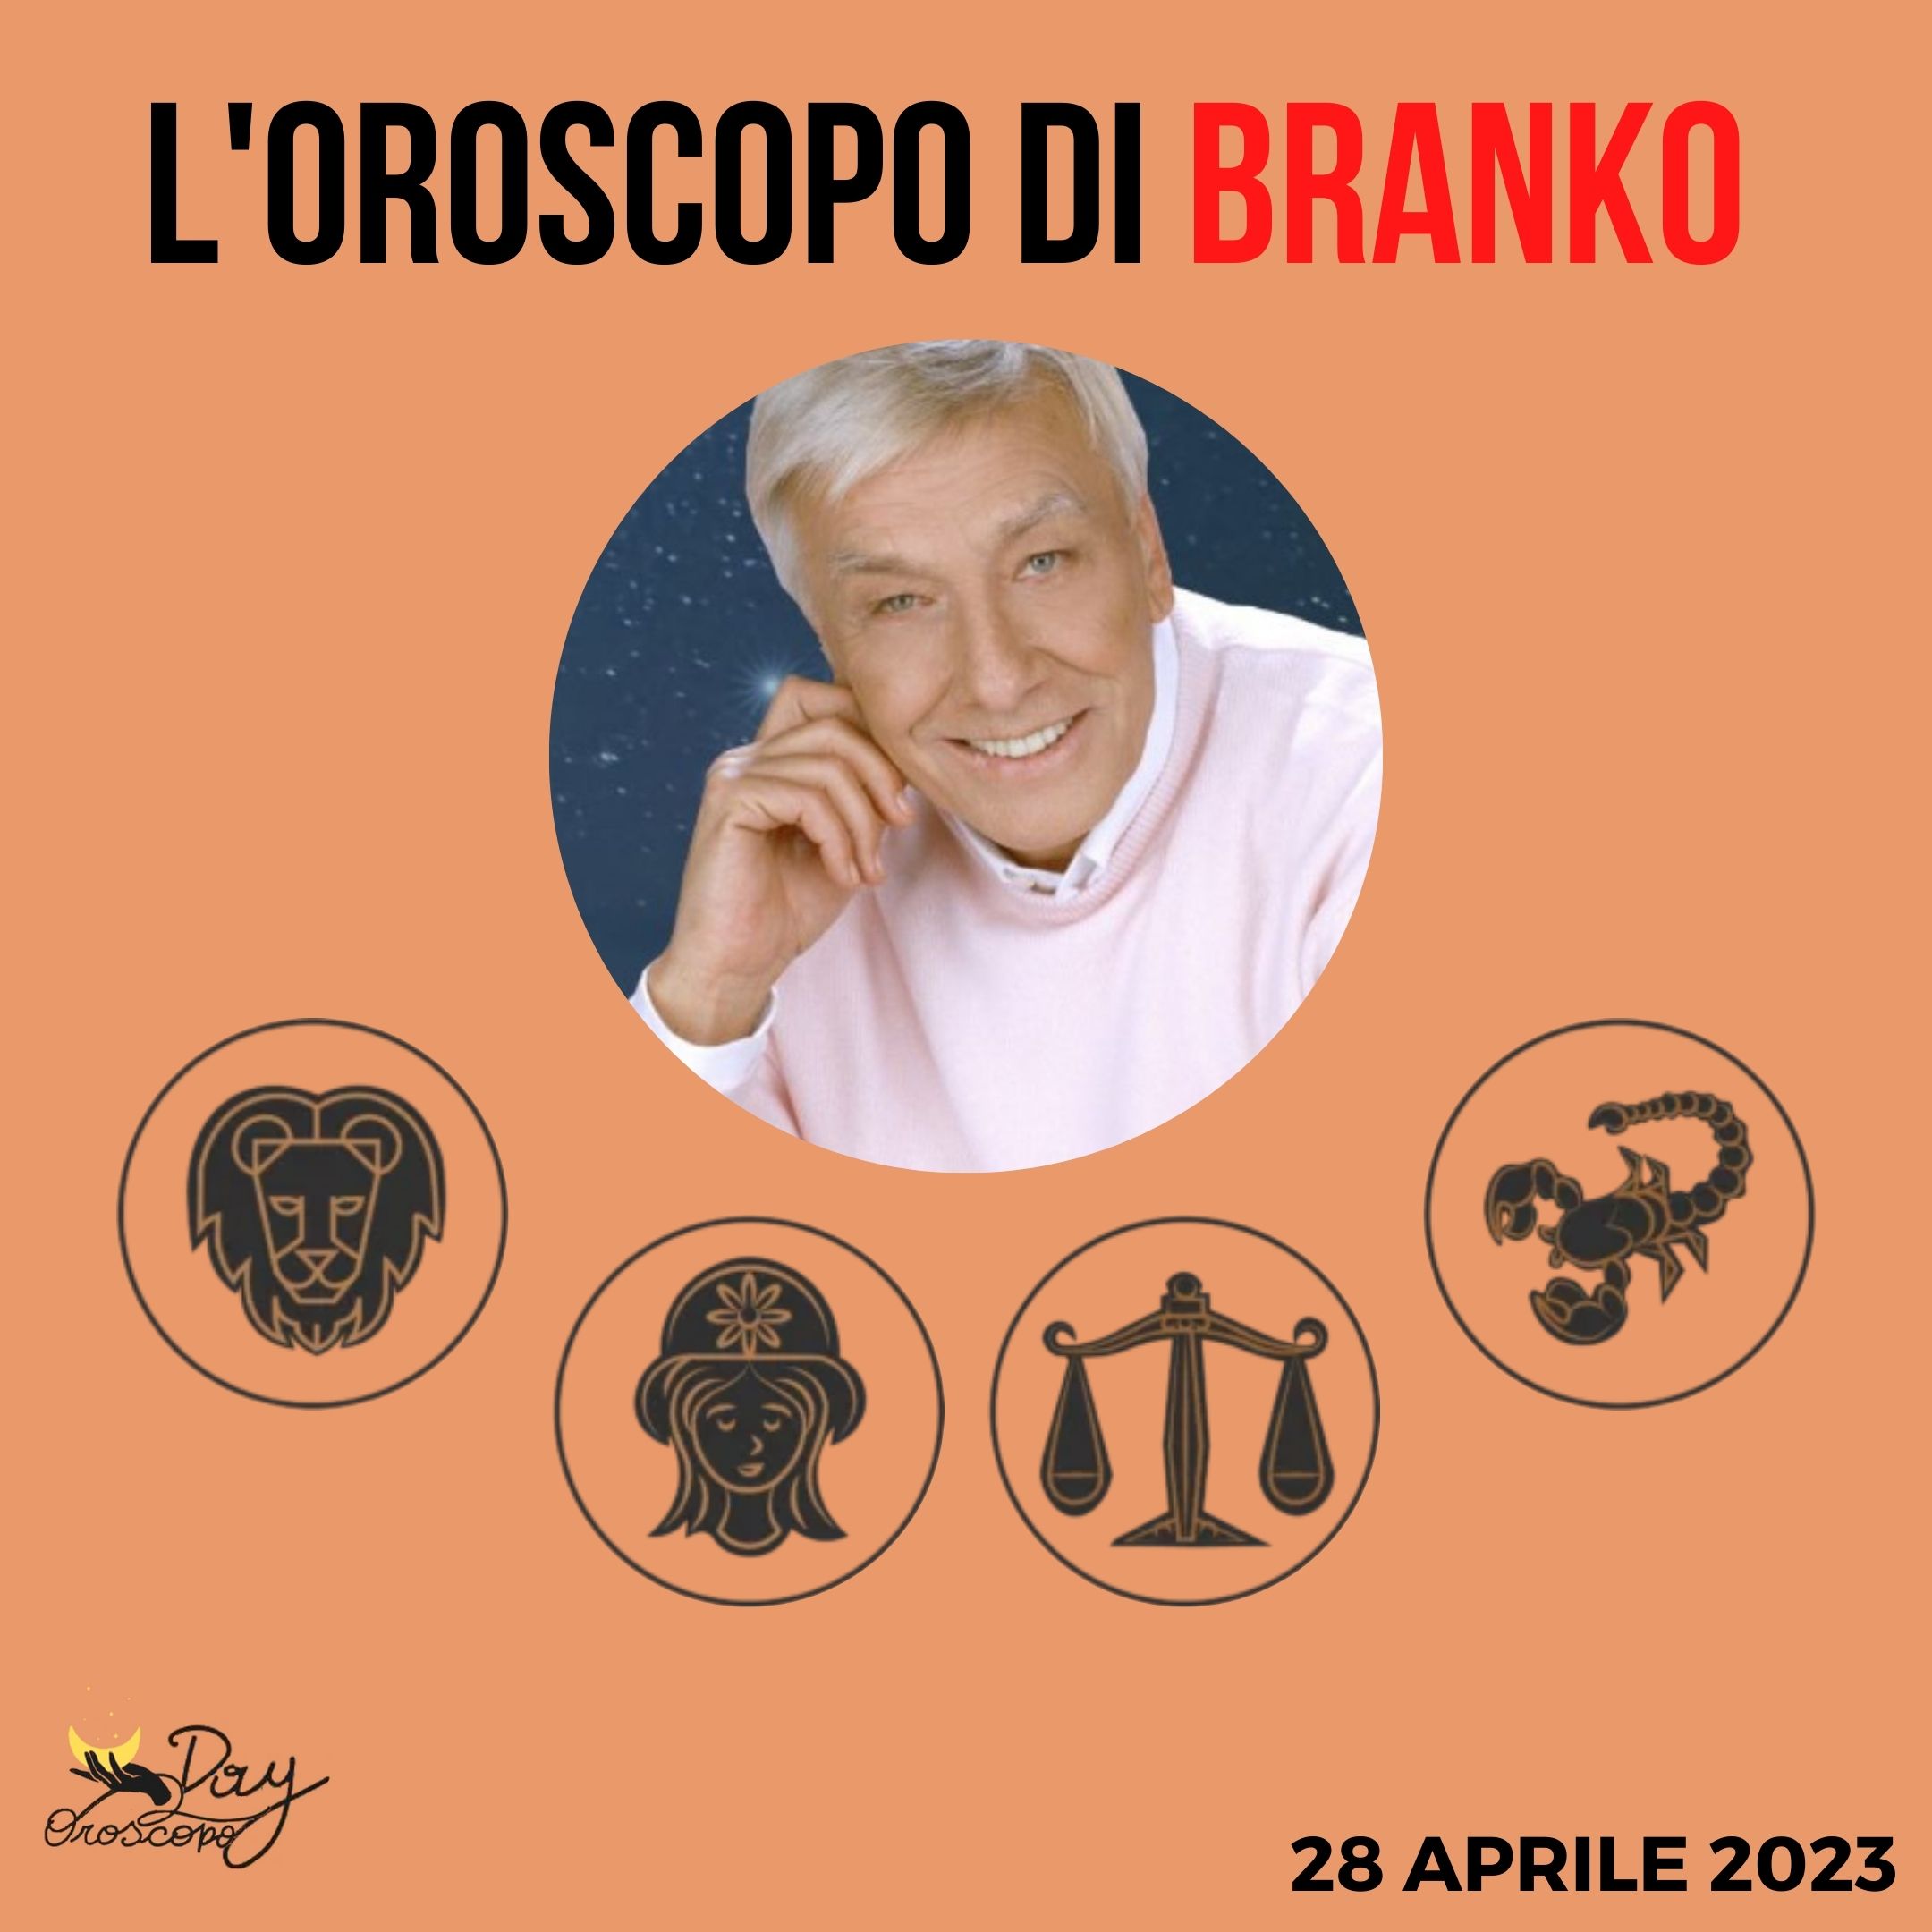 Oroscopo oggi domani Branko 28 aprile Leone Vergine Bilancia Scorpione